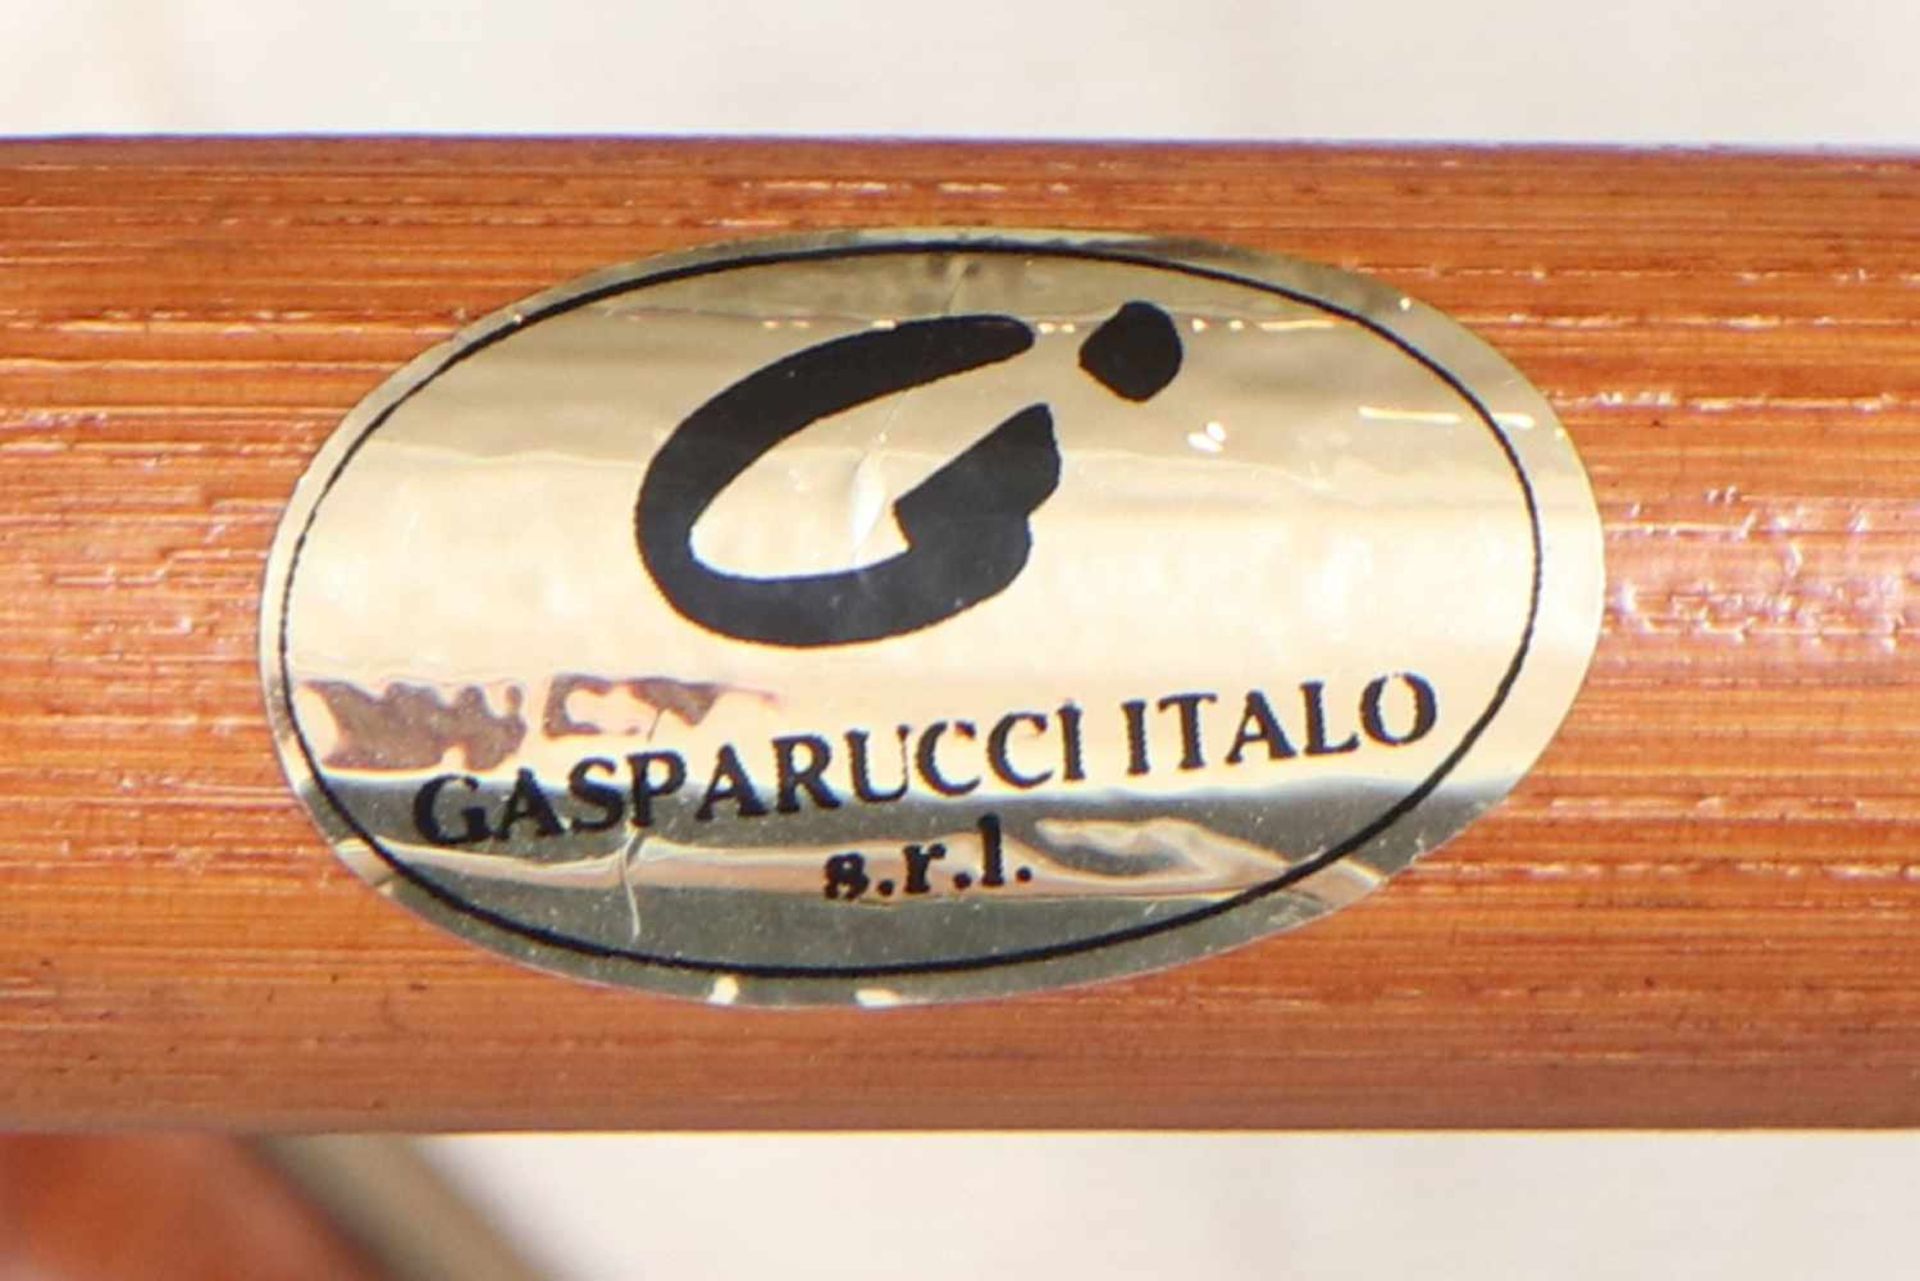 6 GASPARUCCI Rattan-Stühle Italien, um 1990, braun lackiertes Rattan Geflecht, Gestell Bambusrohr - Bild 3 aus 4